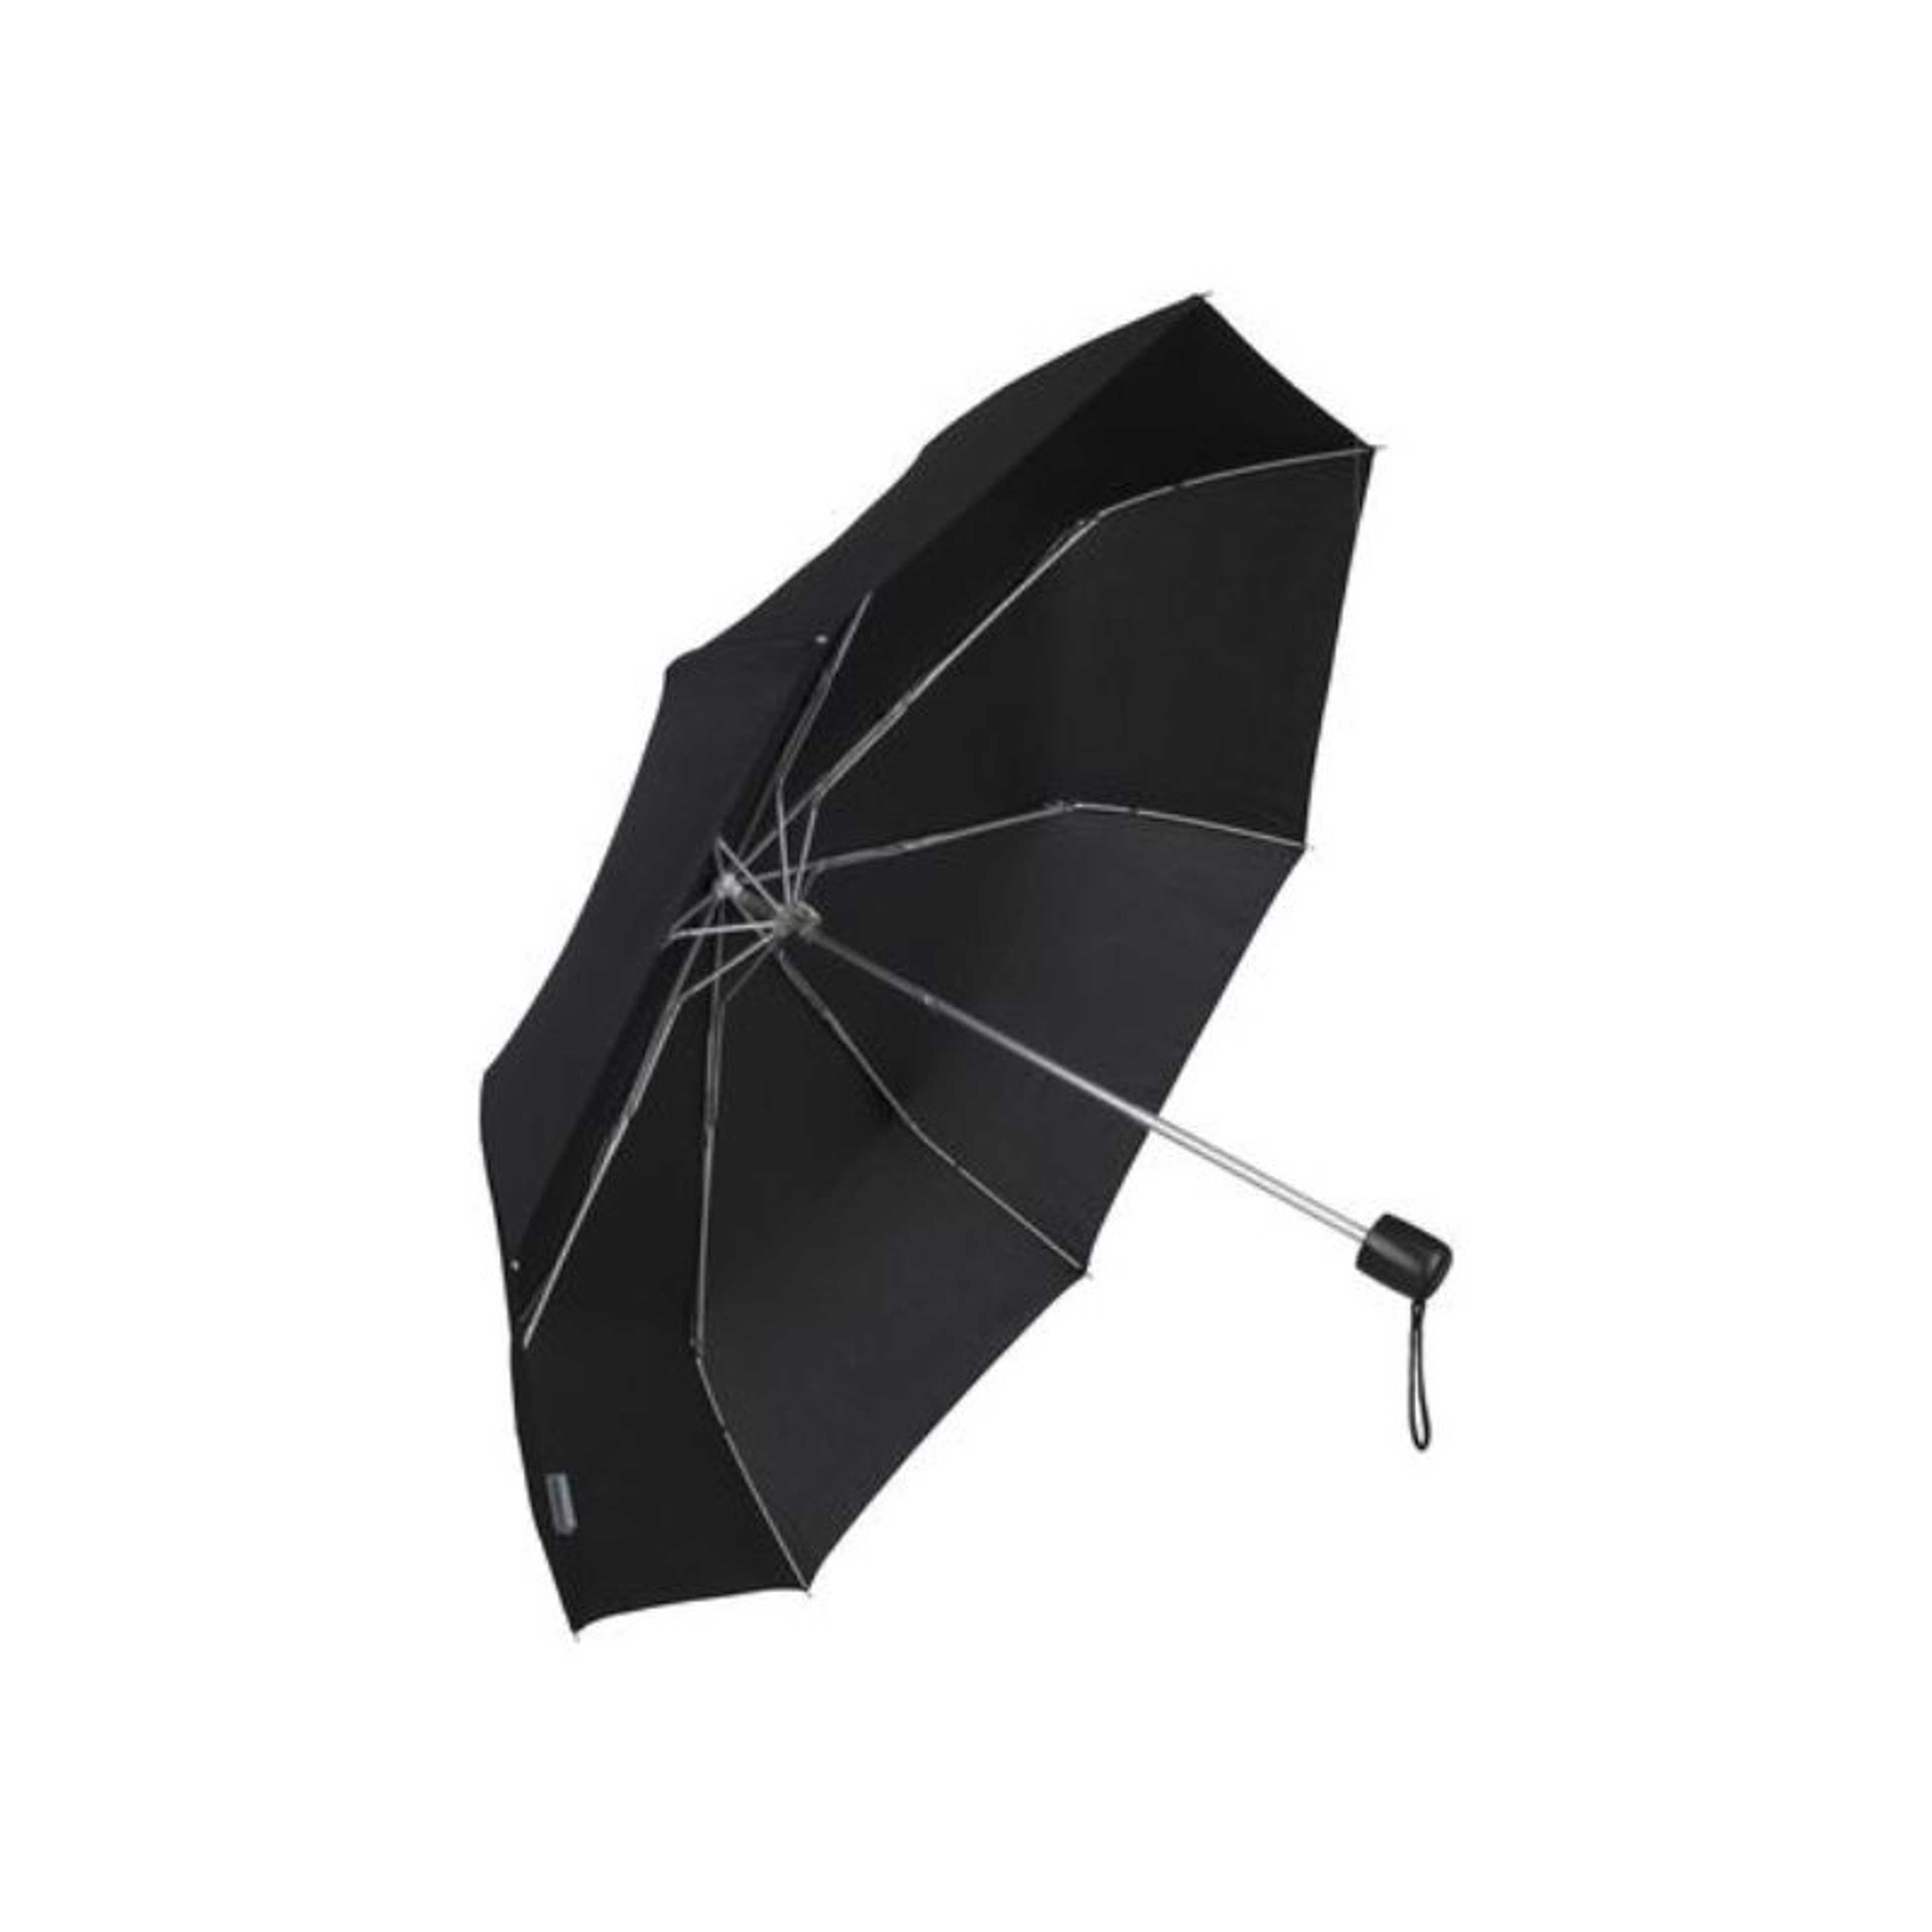 Wenger Compact Umbrella - Black